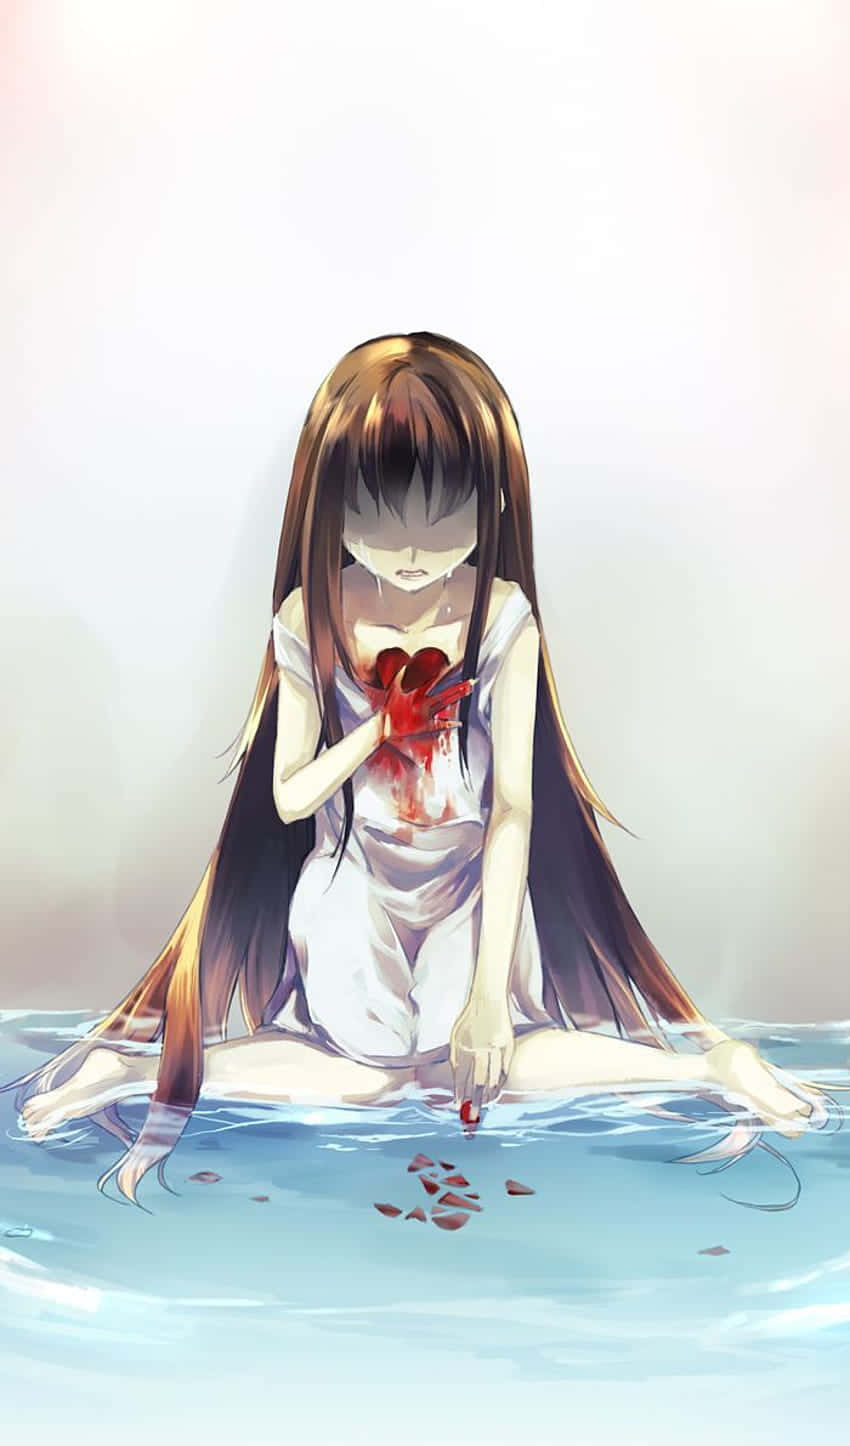 “The bittersweet feeling of heartbreak in an anime.” Wallpaper